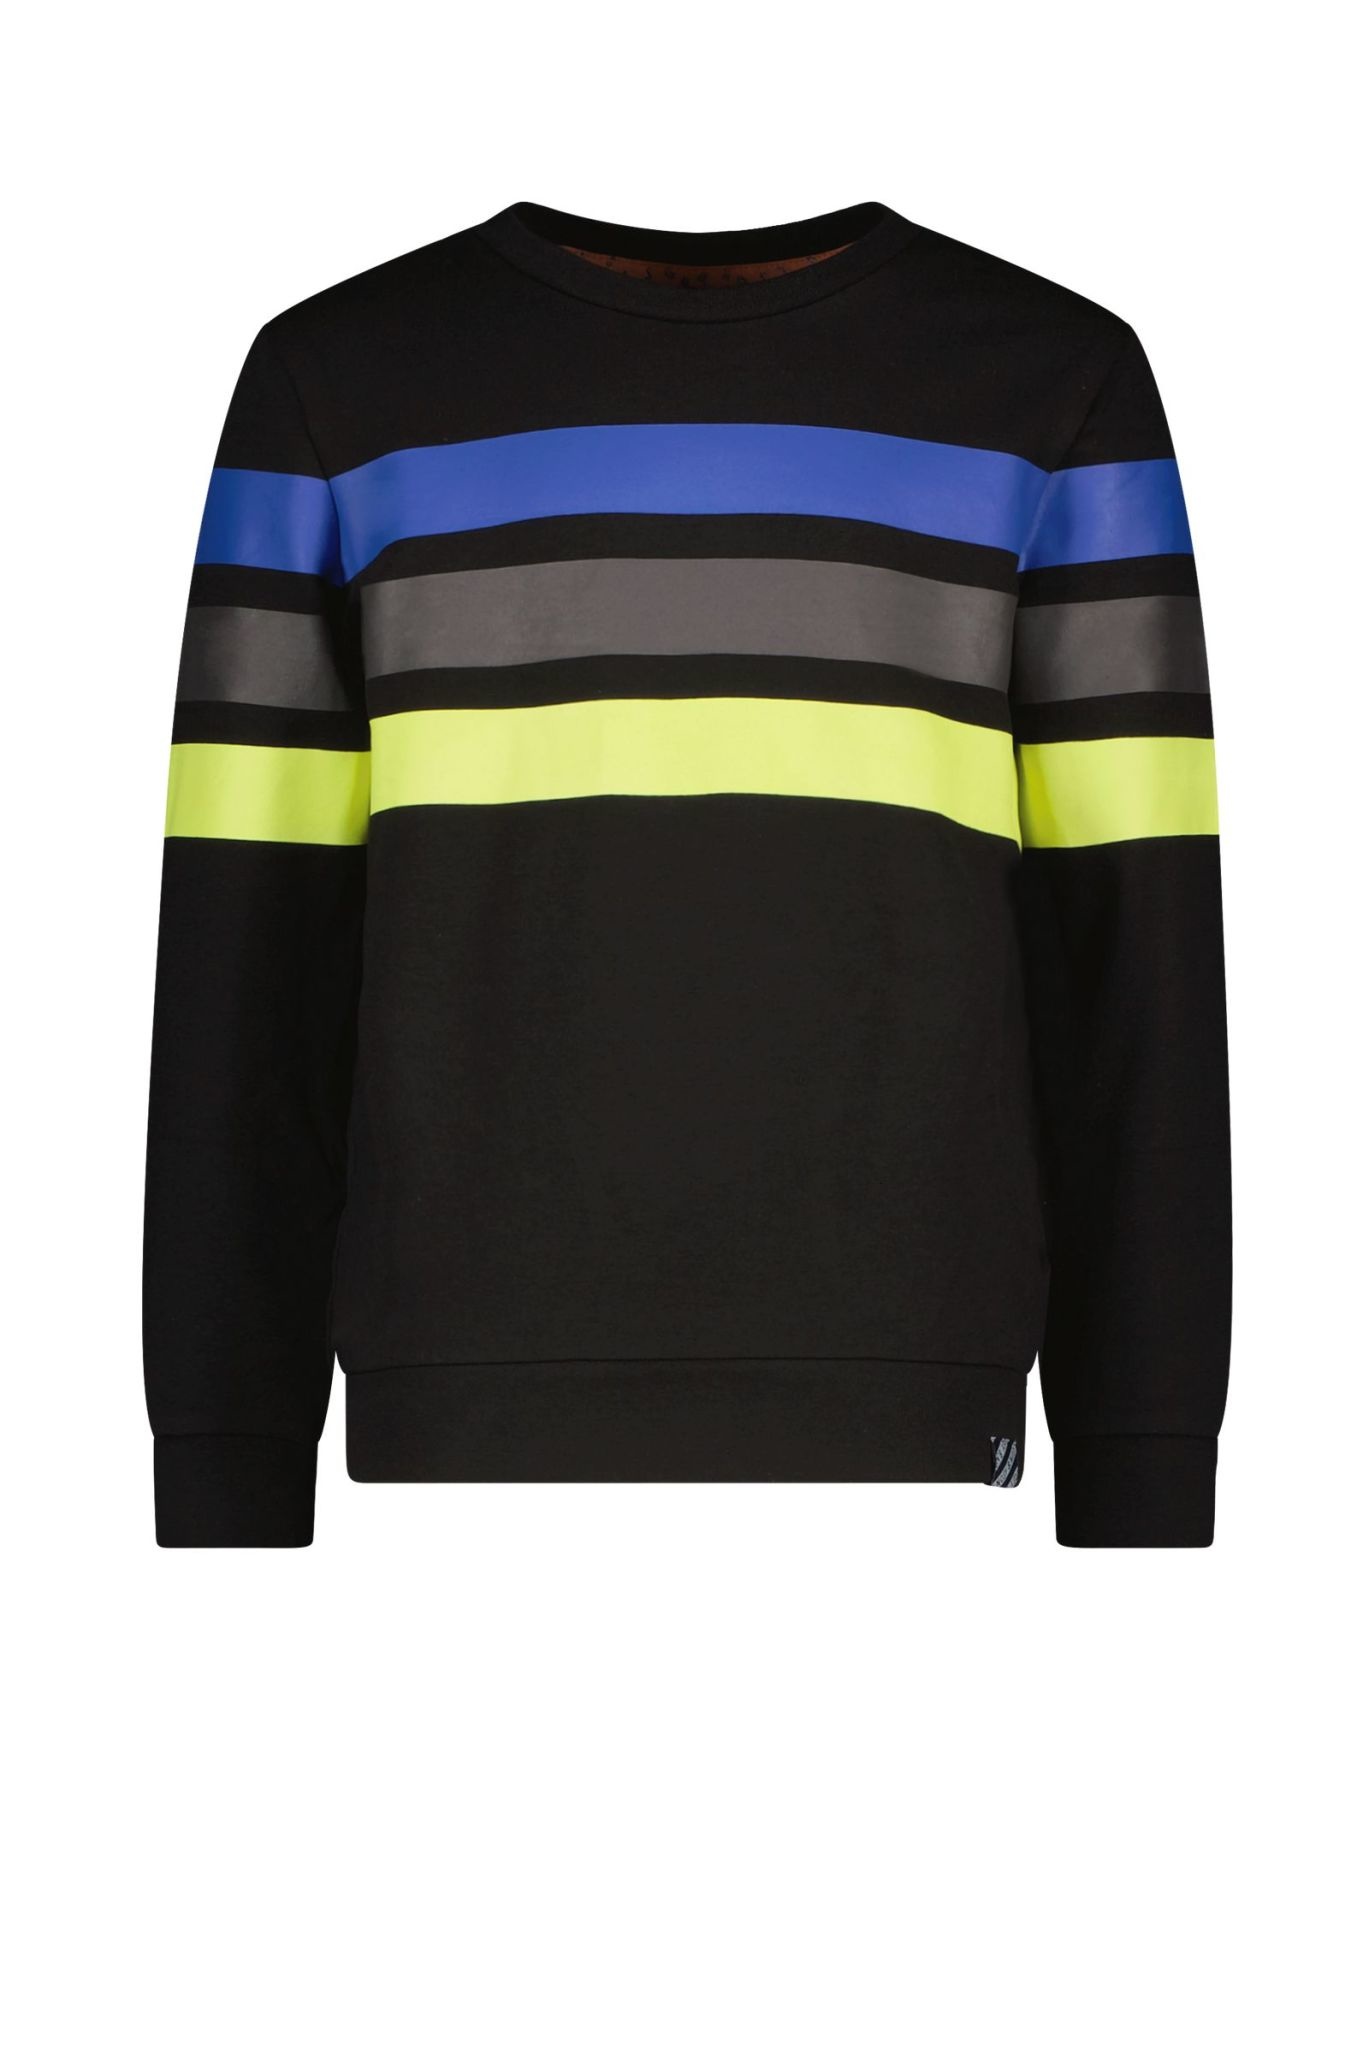 Afbeelding van B.Nosy Jongens sweater met 3 horizontale gekleurde strepen